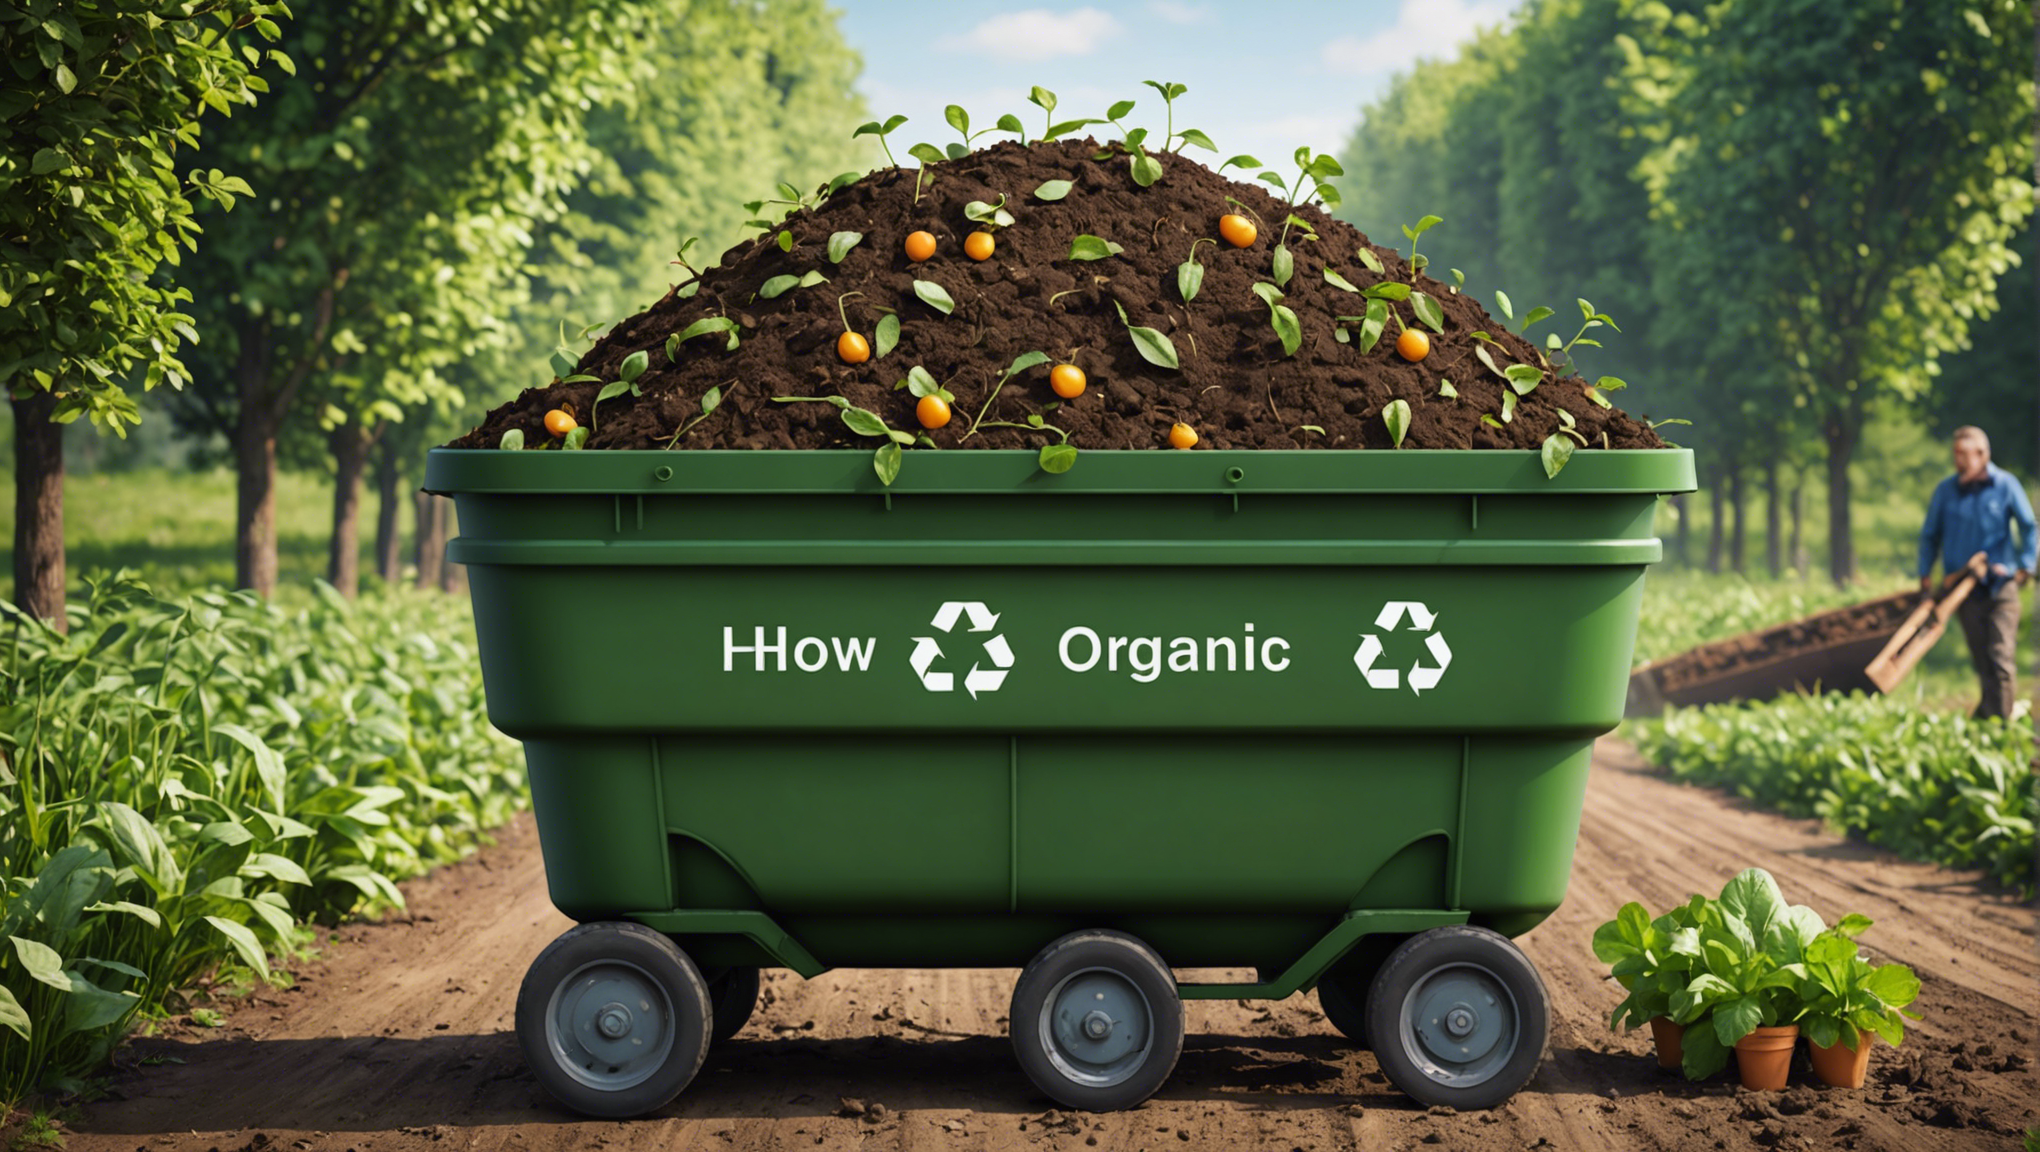 découvrez comment valoriser vos déchets organiques pour en faire des ressources précieuses grâce à nos conseils pratiques et écologiques.